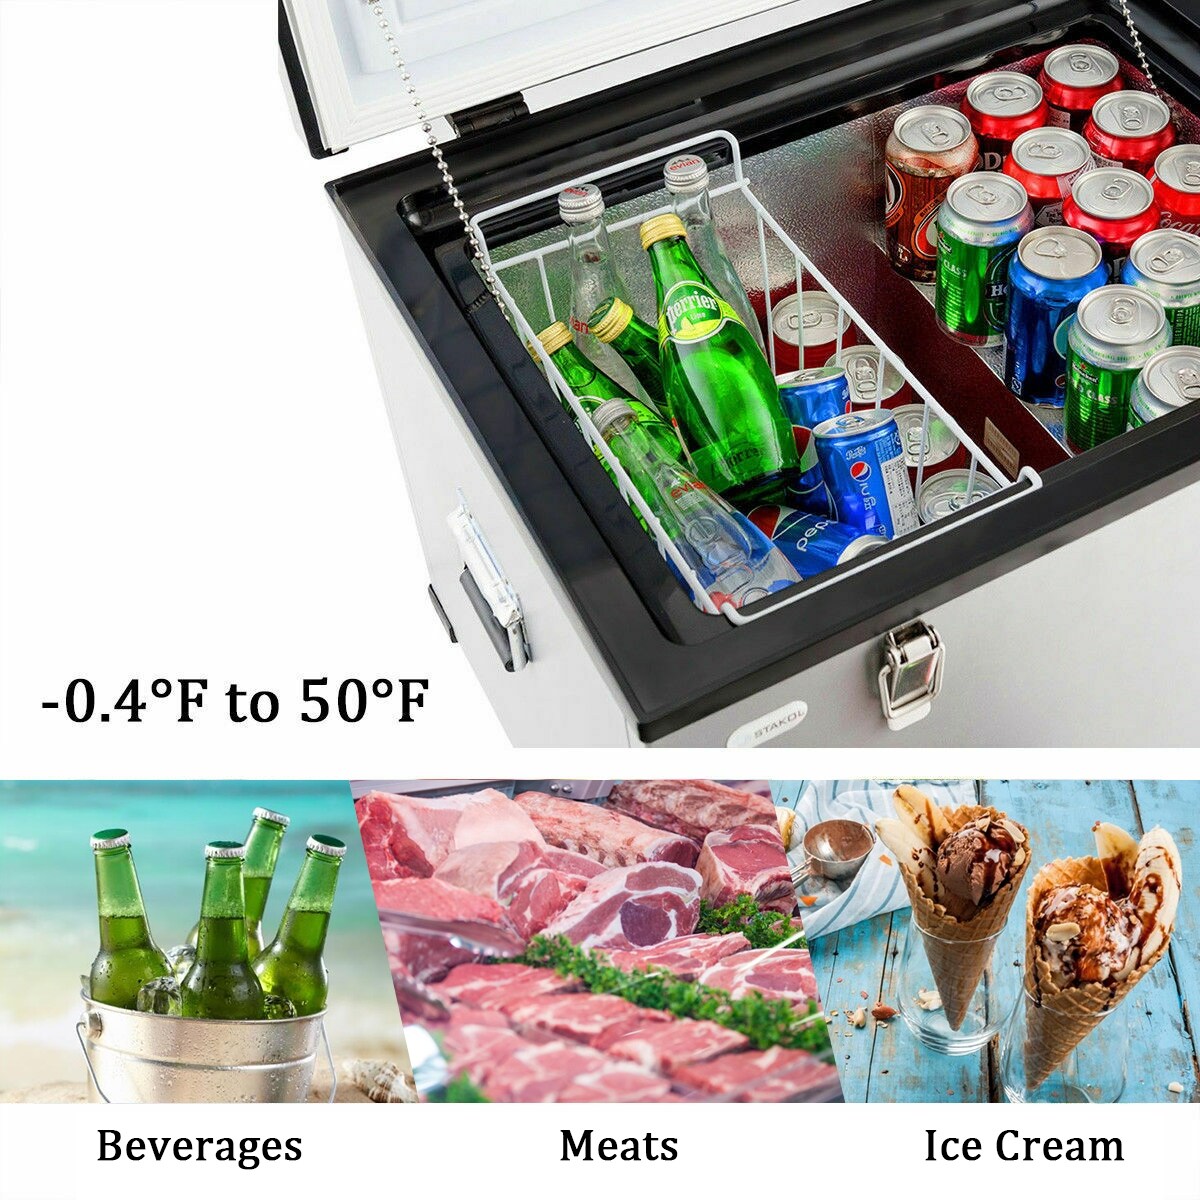 https://ak1.ostkcdn.com/images/products/is/images/direct/50836d2a4d7db962307931187e8b258f80e9293d/Costway-63-Quart-Portable-Electric-Car-Cooler-Refrigerator---Freezer-Compressor-Camping.jpg